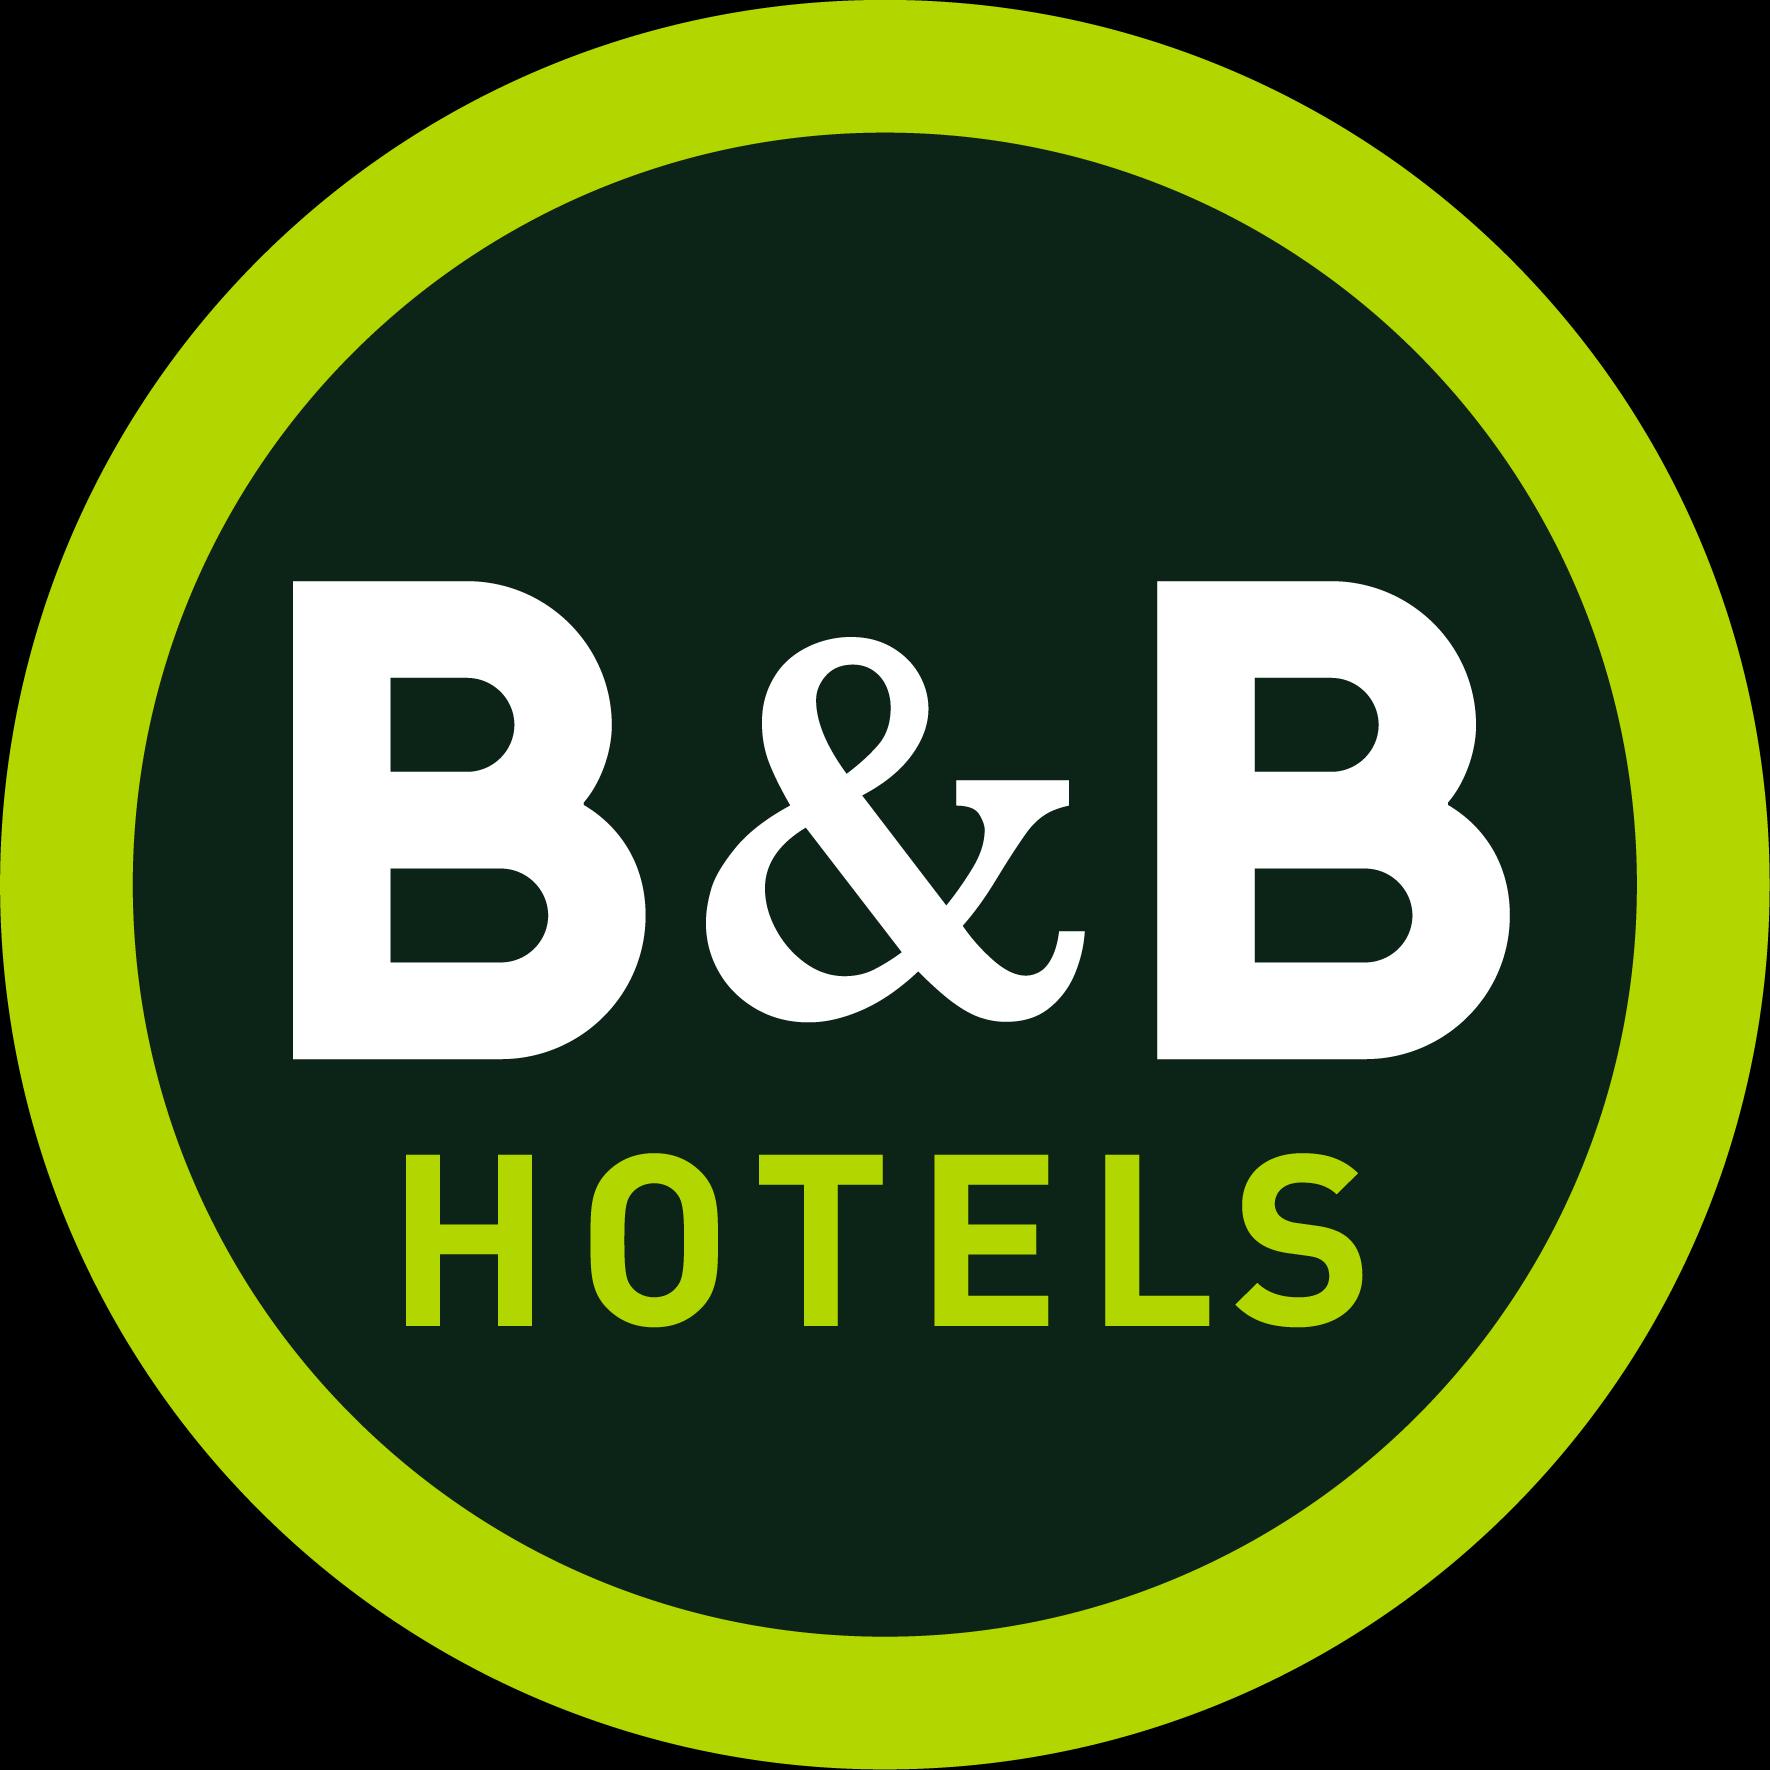 B&b Hotel Saint-brieuc Trégueux